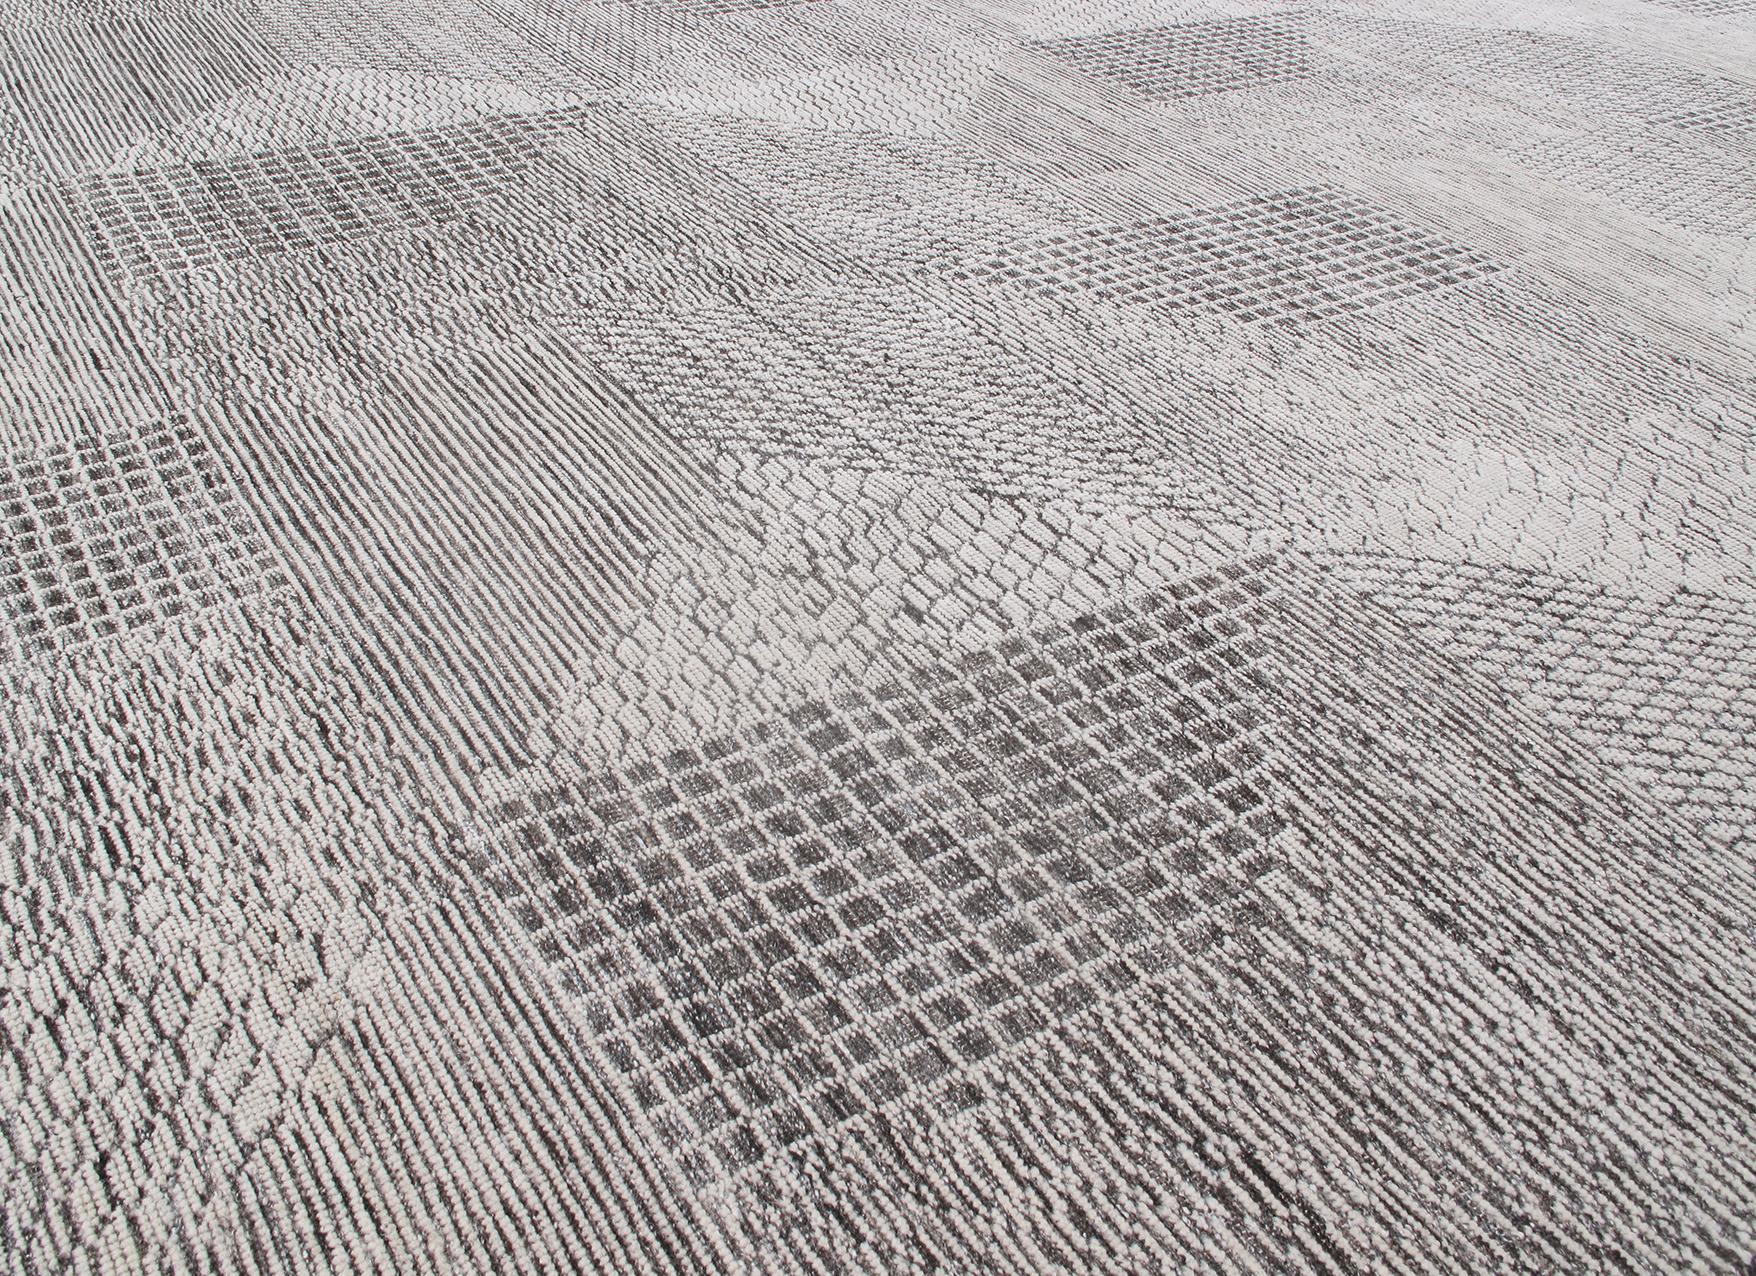 Notre tapis Mosaic est noué à la main et fabriqué à partir de la meilleure laine teintée naturellement, cardée et filée à la main. 
Tailles et couleurs personnalisées disponibles. La taille du tapis est de 9'0